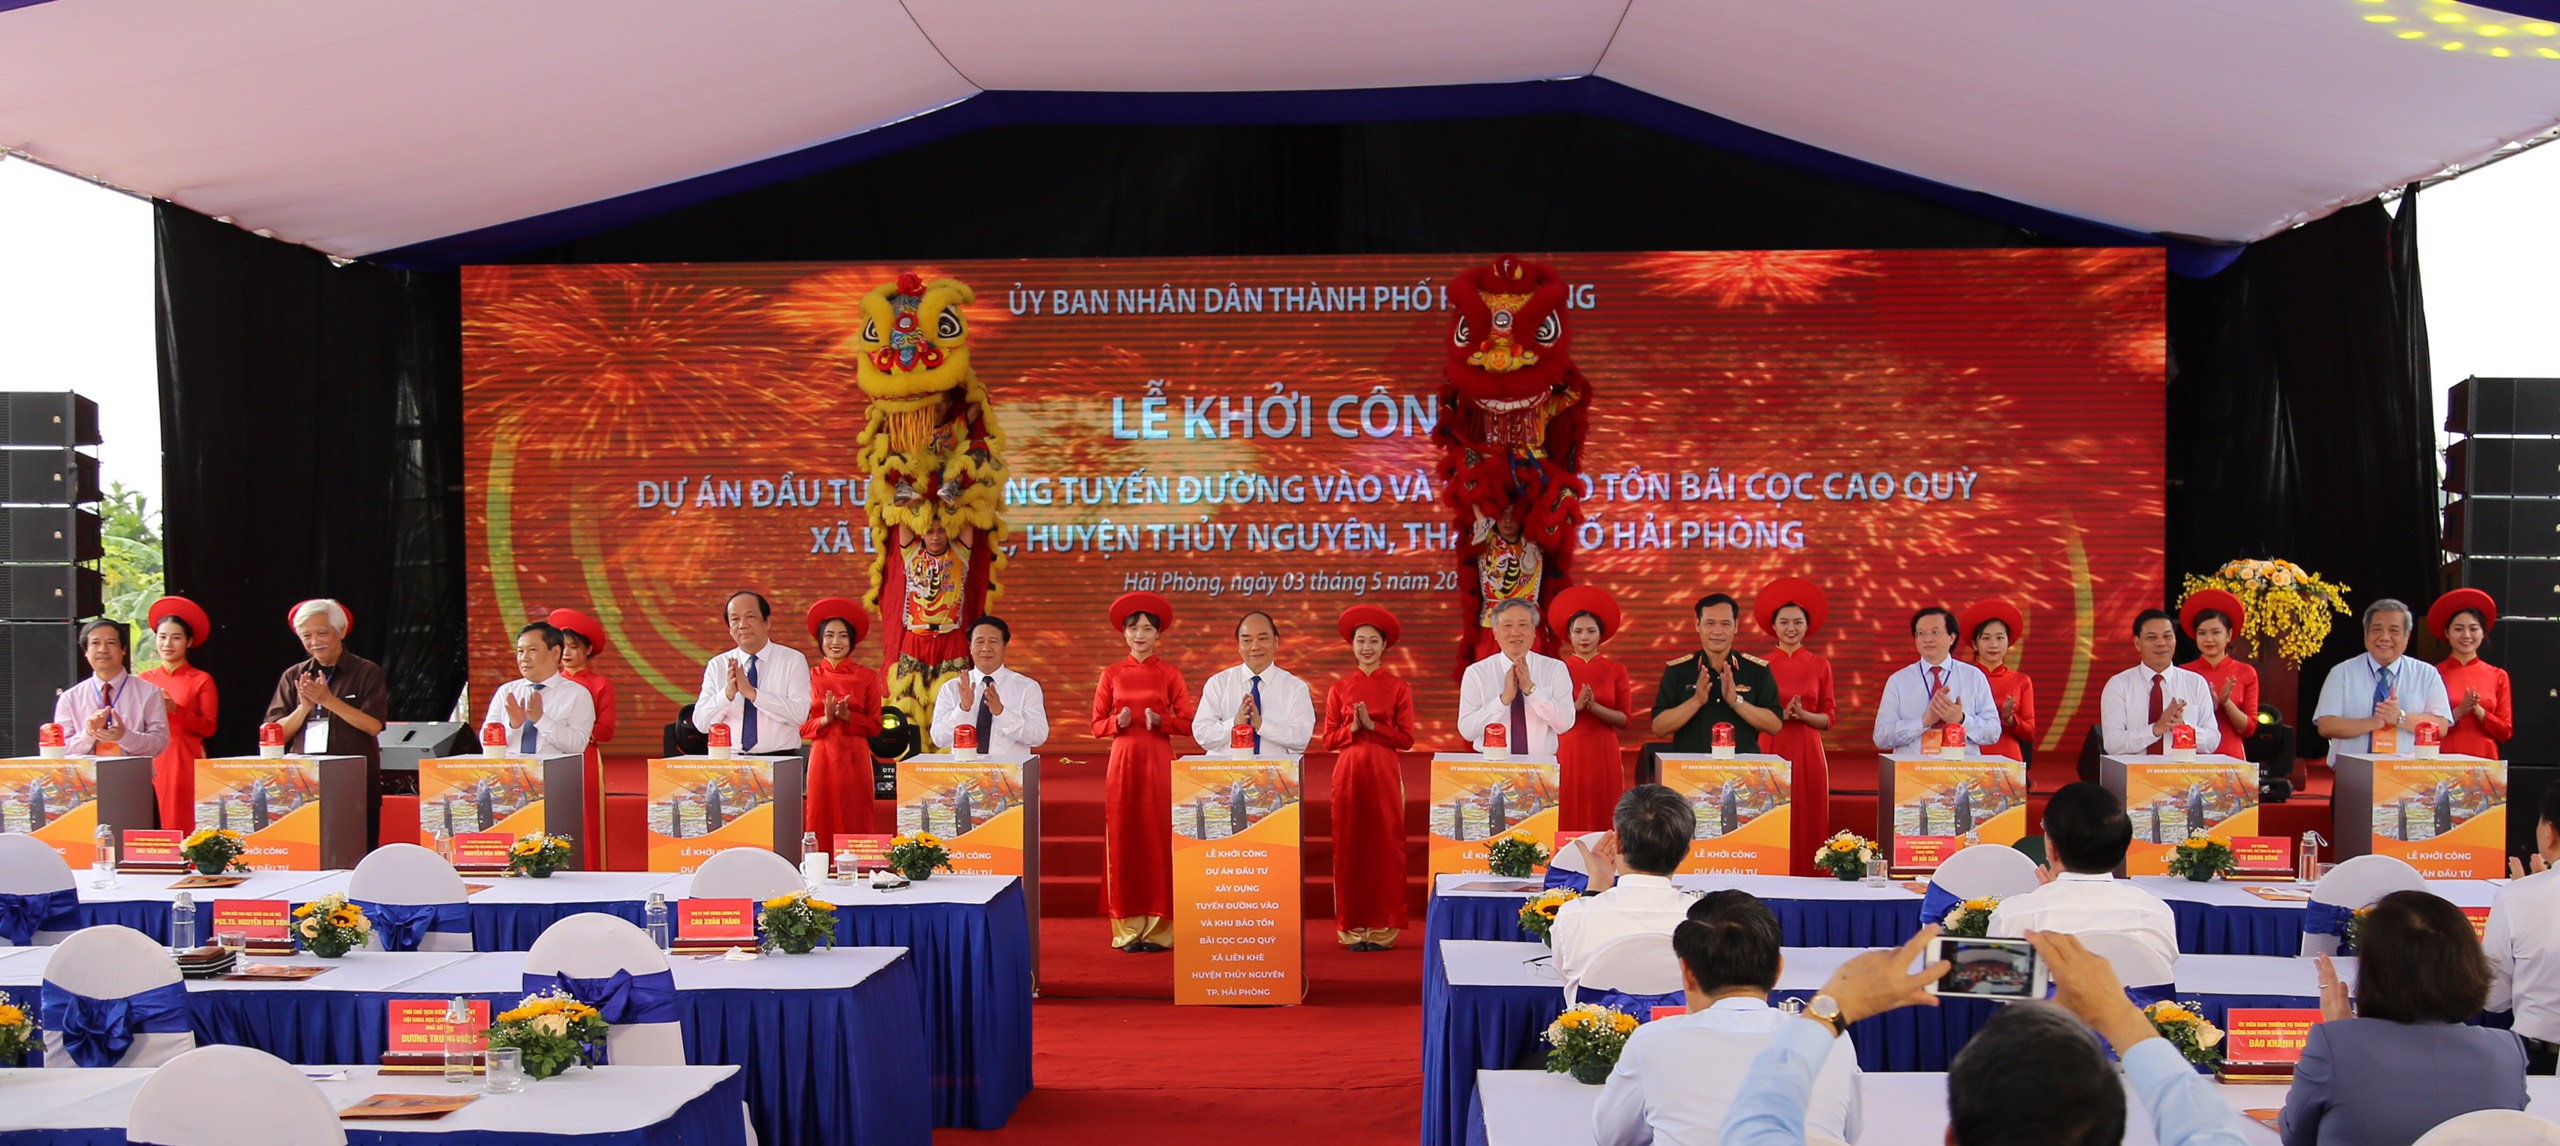 Thủ tướng Nguyễn Xuân Phúc và các đại biểu nhấn nút khởi công Dự án